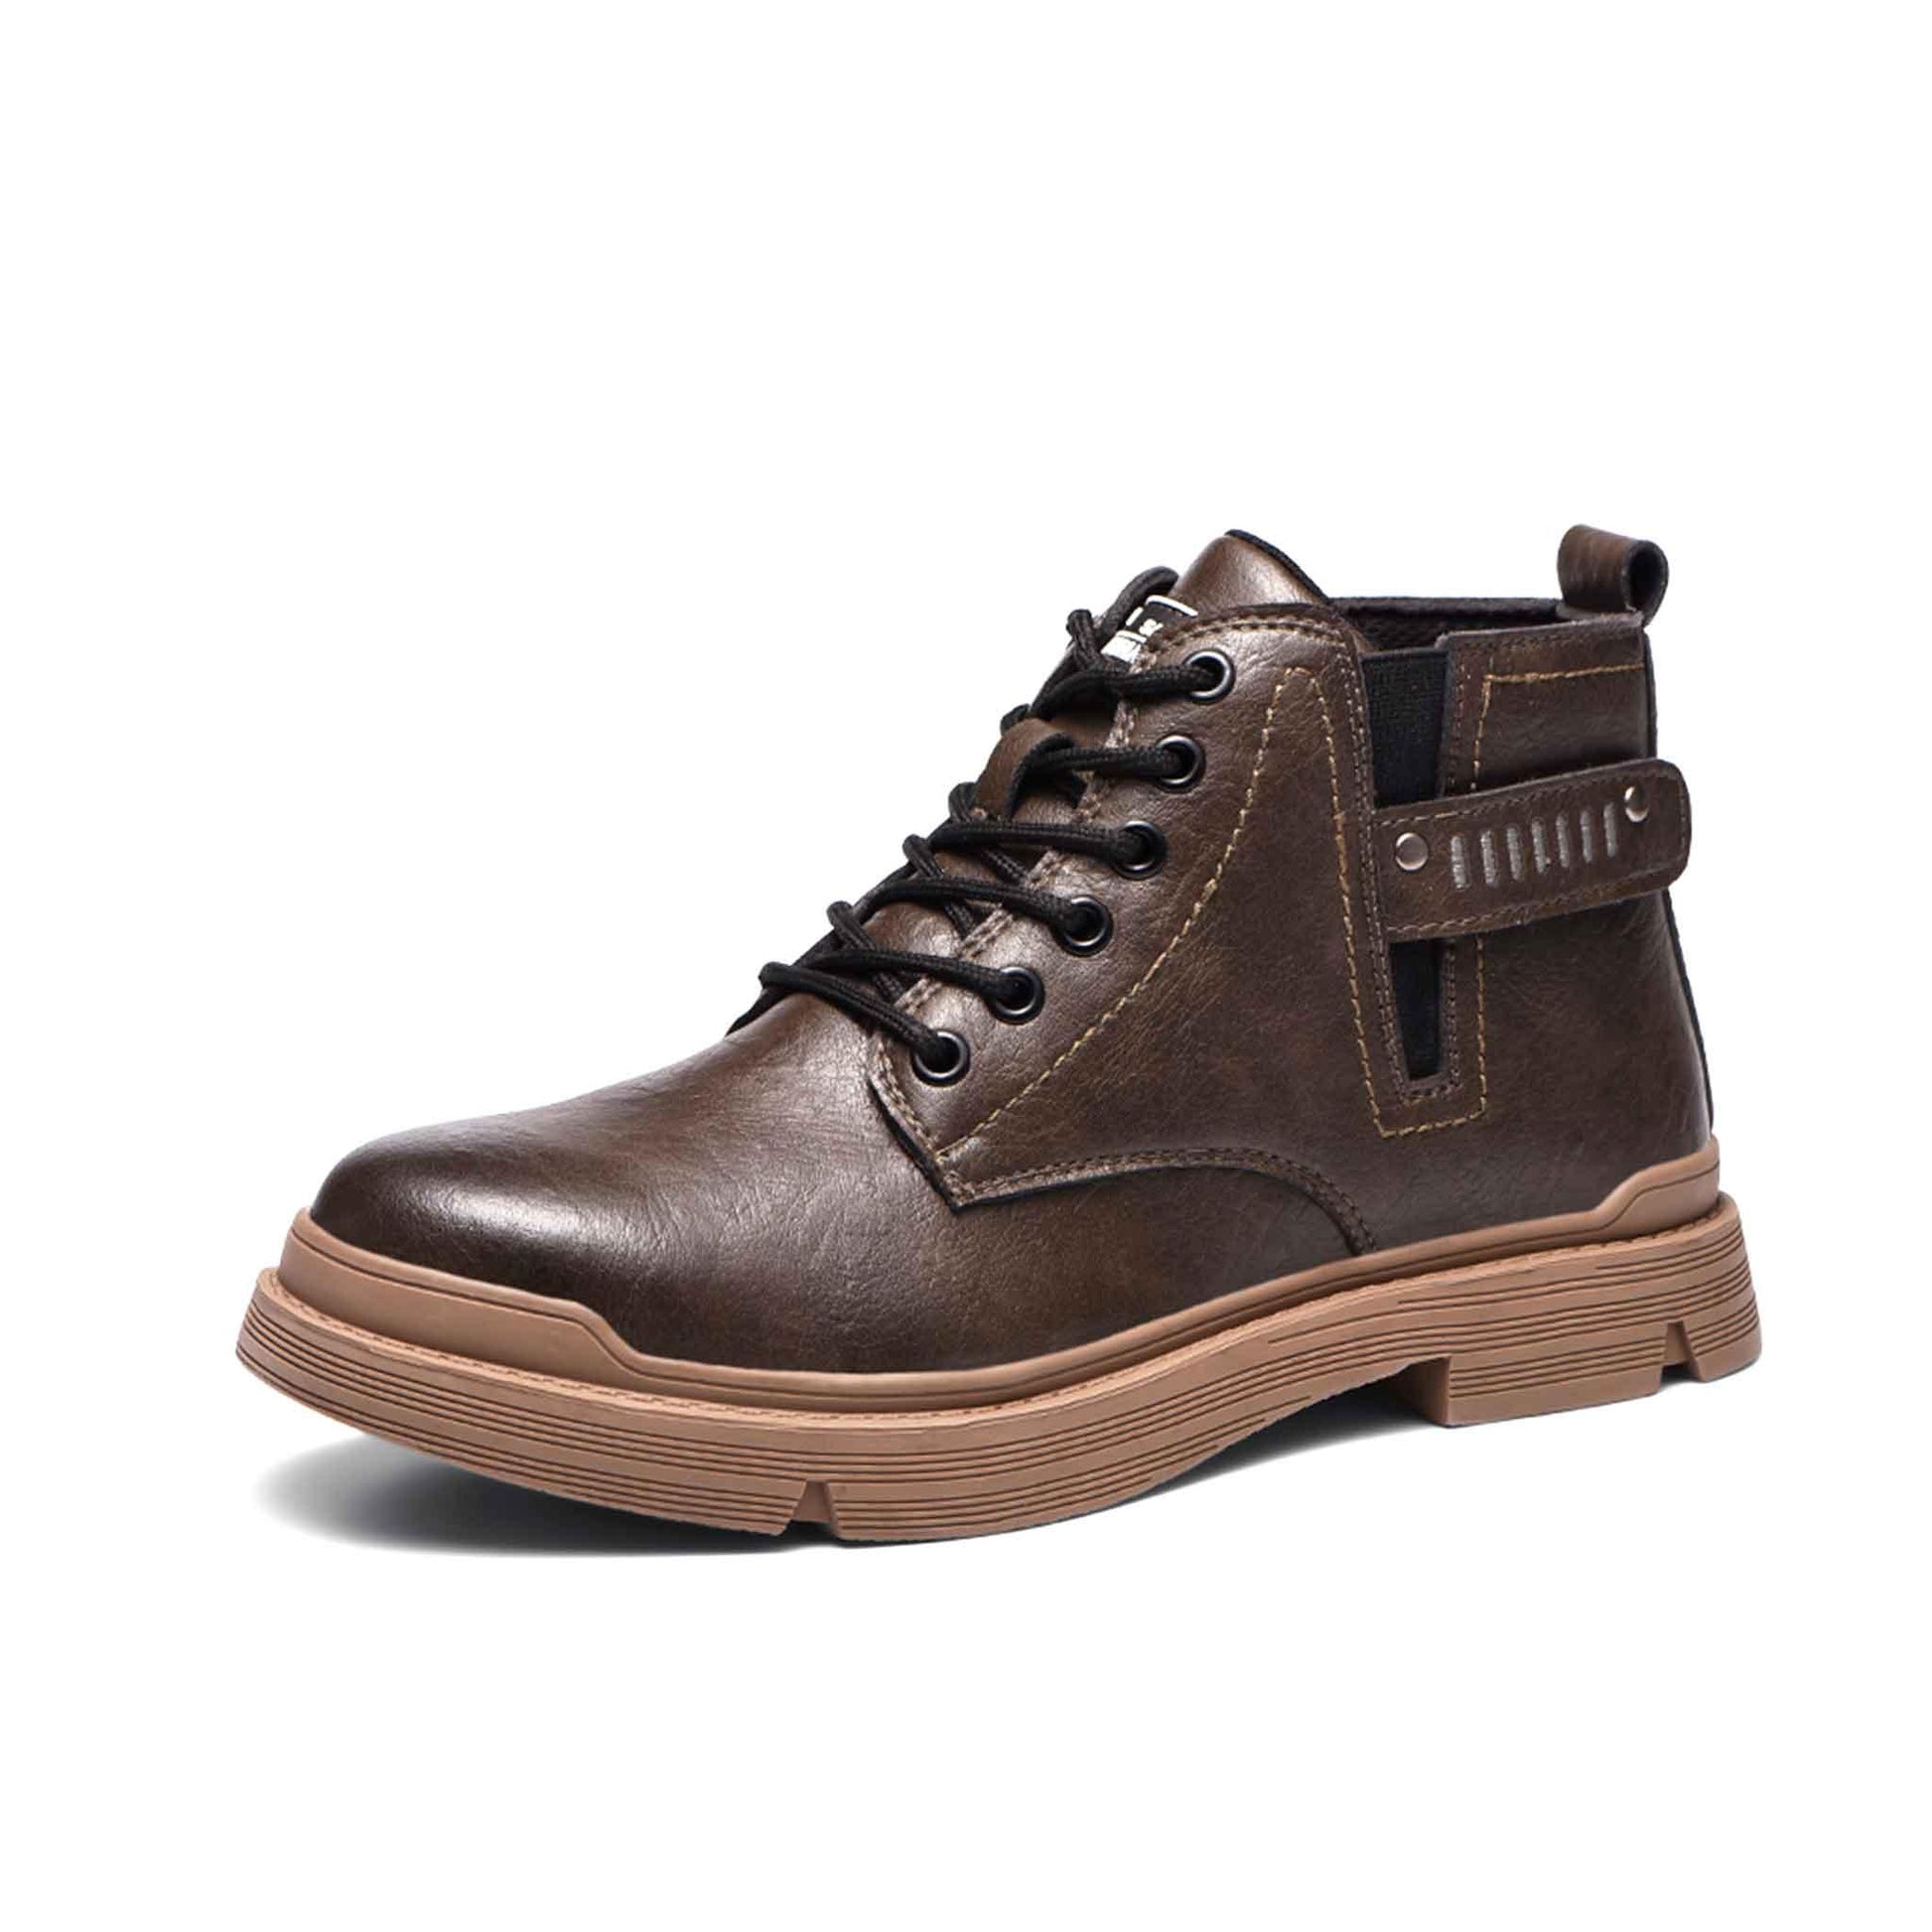 Men's Steel Toe Work Boots - Slip Resistant | B183 - USINE PRO Footwear